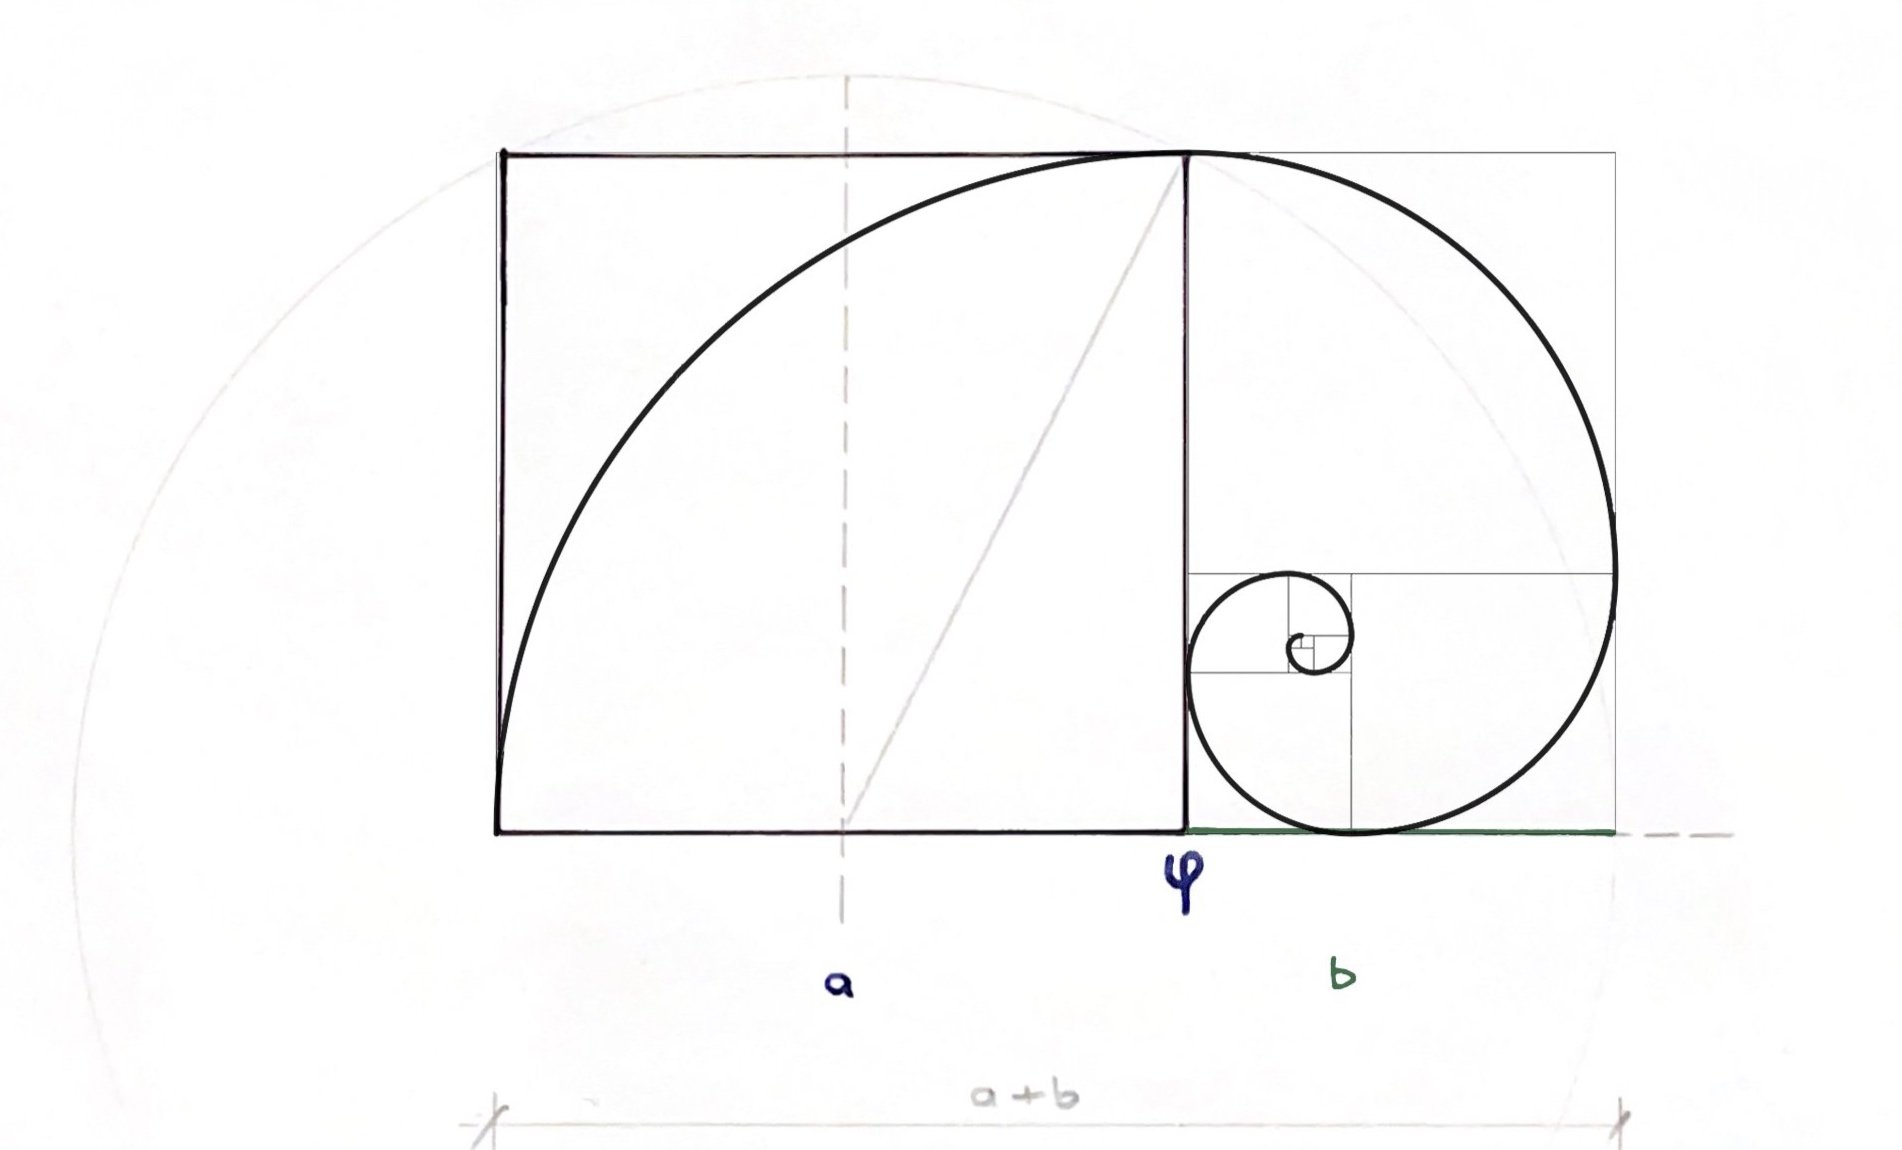  Herleitung der goldenen Spirale auch spira mirabilis, Bernoulli’sche Spirale oder Fibonacci-Spirale genannt 